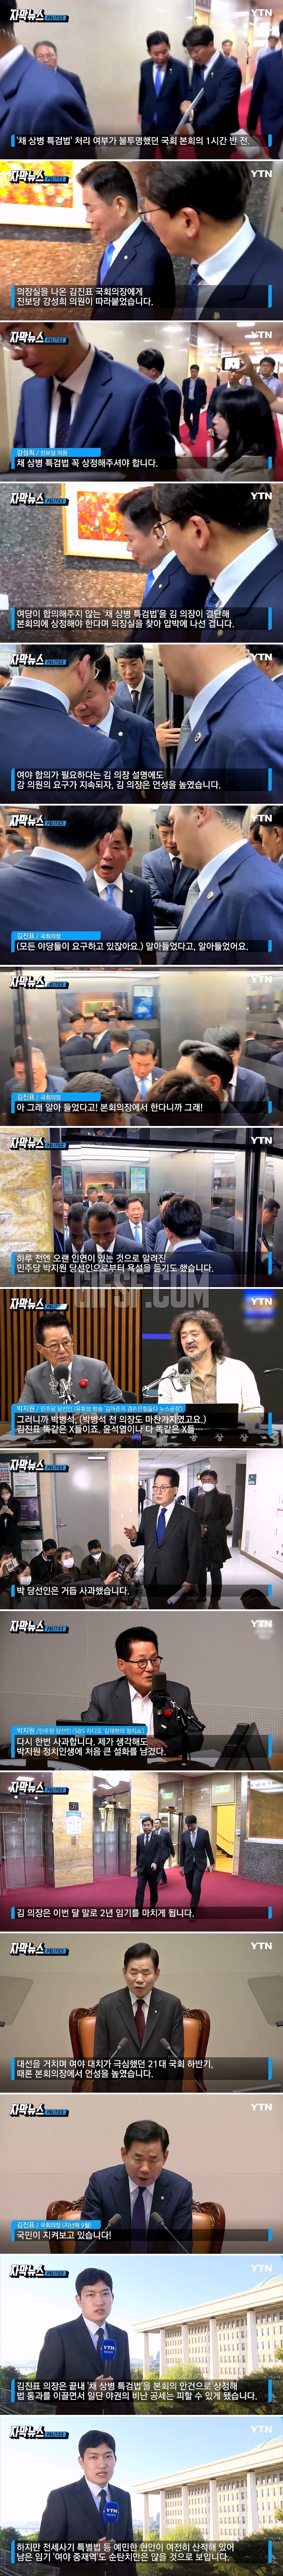 야권 의원들과 설전.김진표 의장 ',수난시대',.jpg